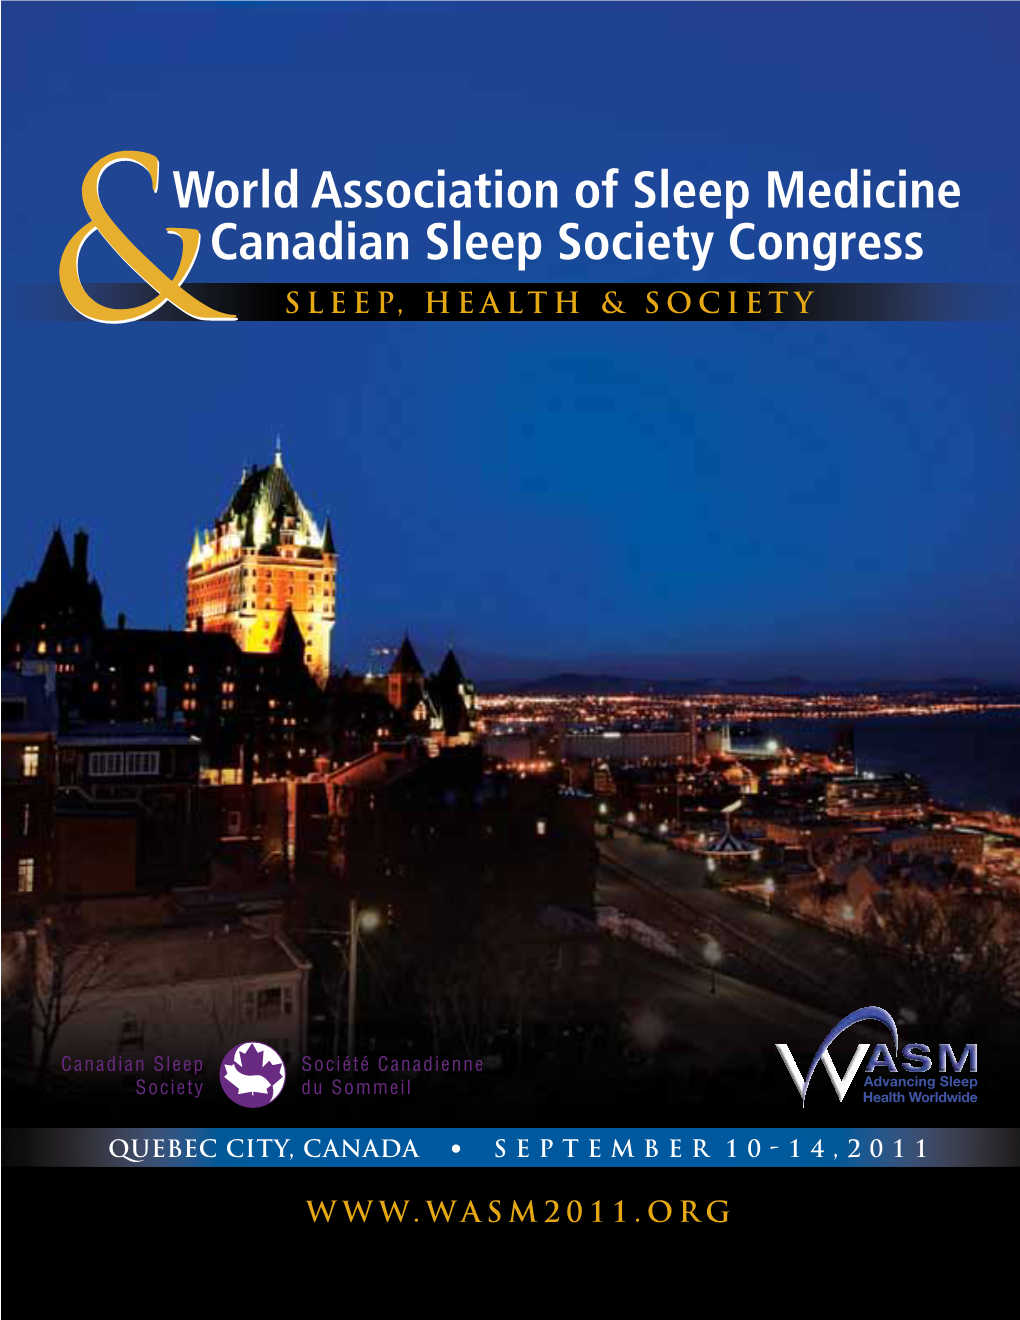 World Association of Sleep Medicine Canadian Sleep Society Congress & Sleep, Health & Society